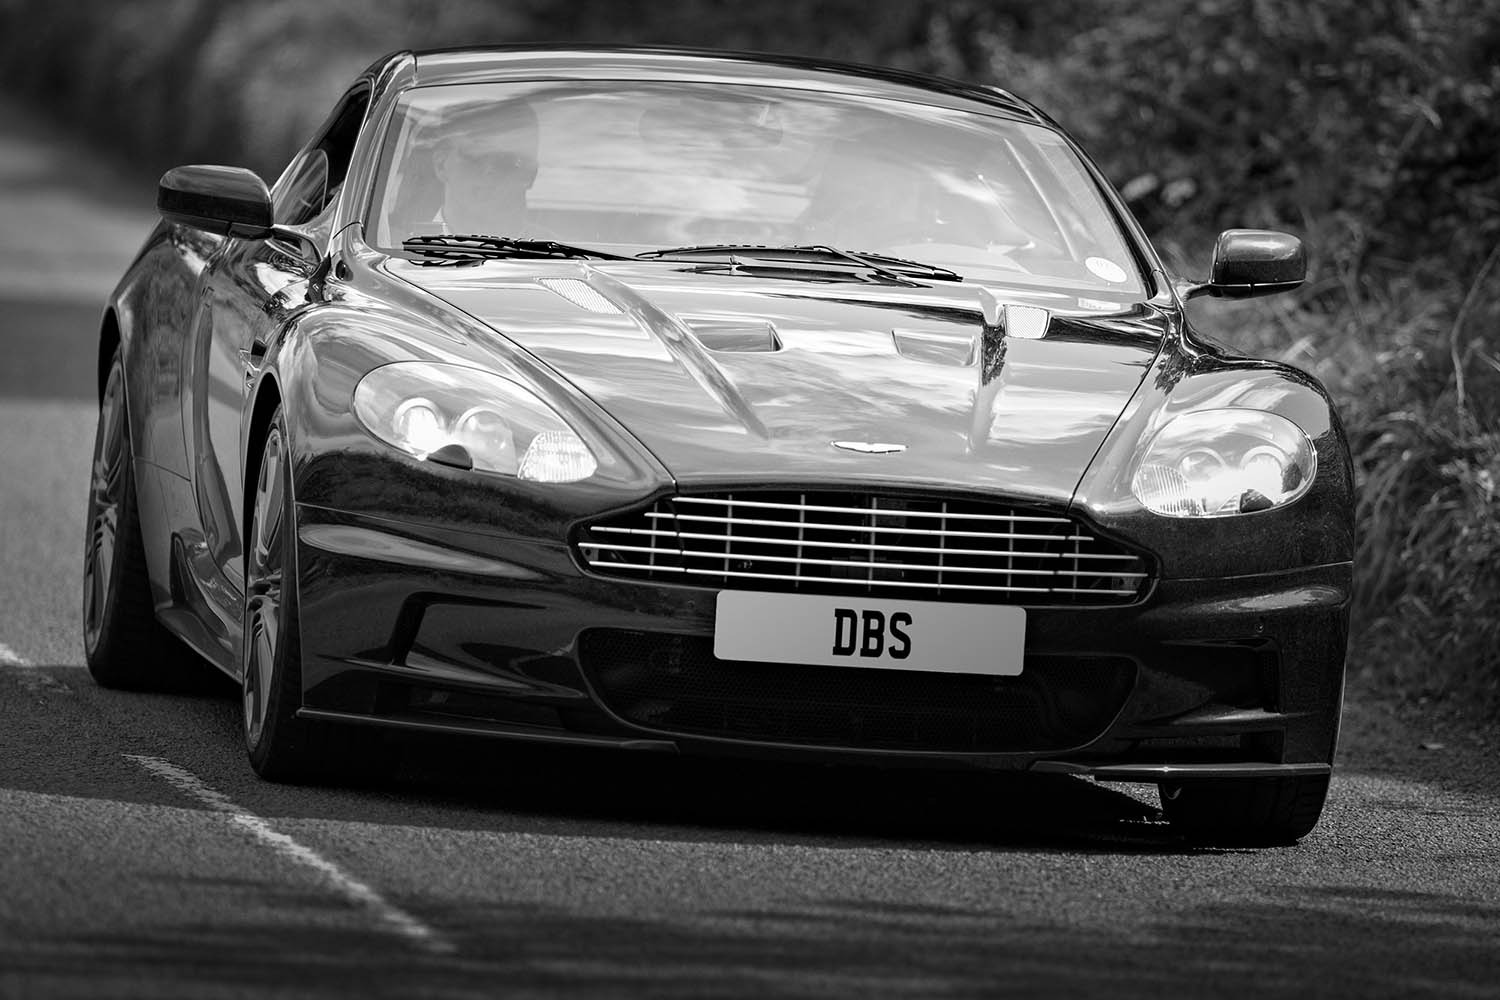 Aston Martin DBS launch